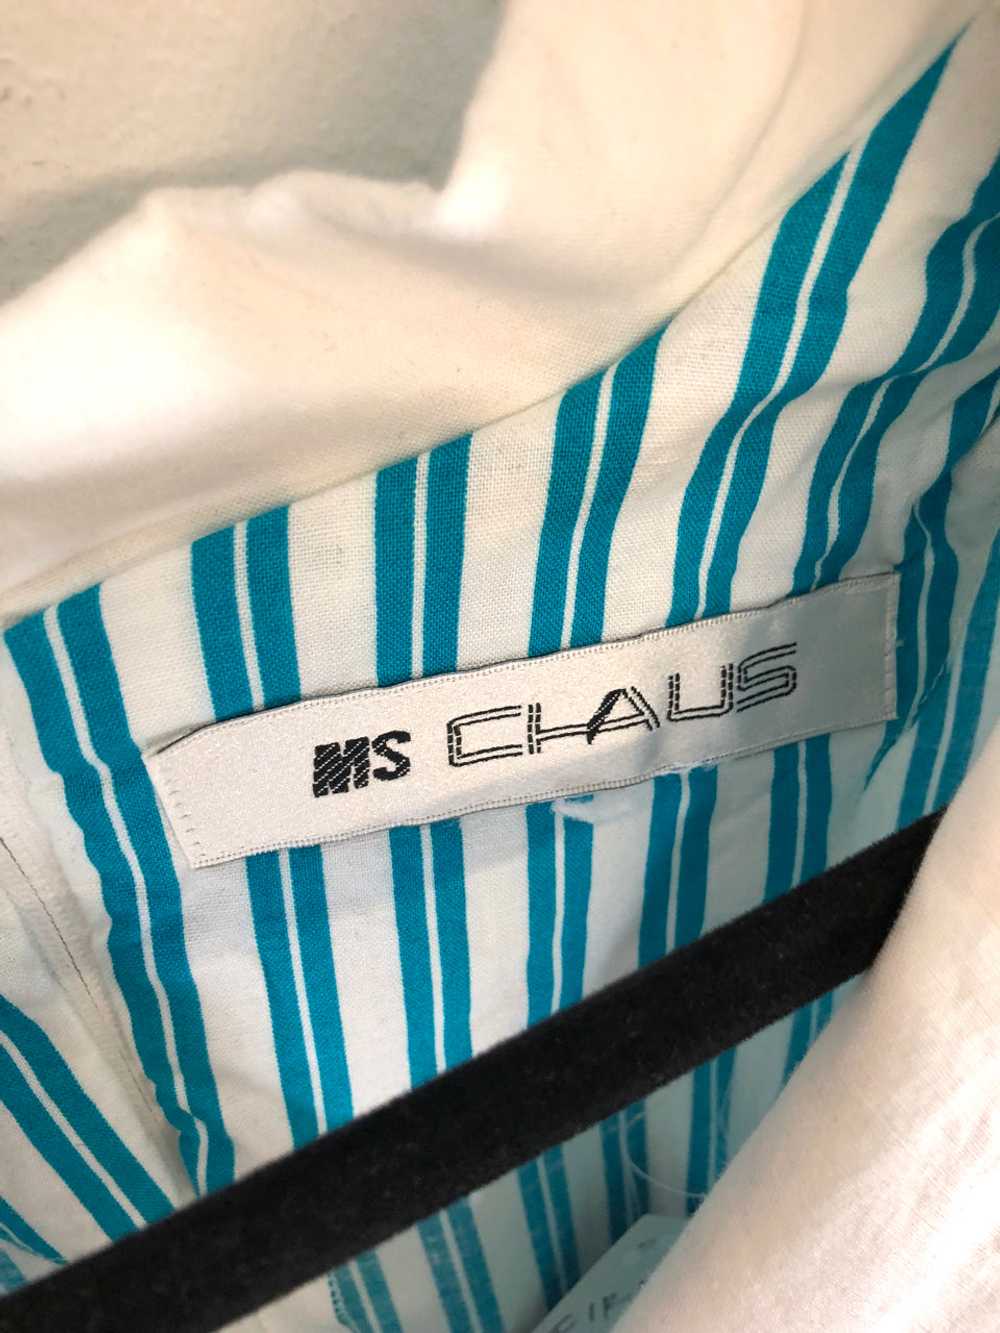 Ms Chaus Dress - image 3